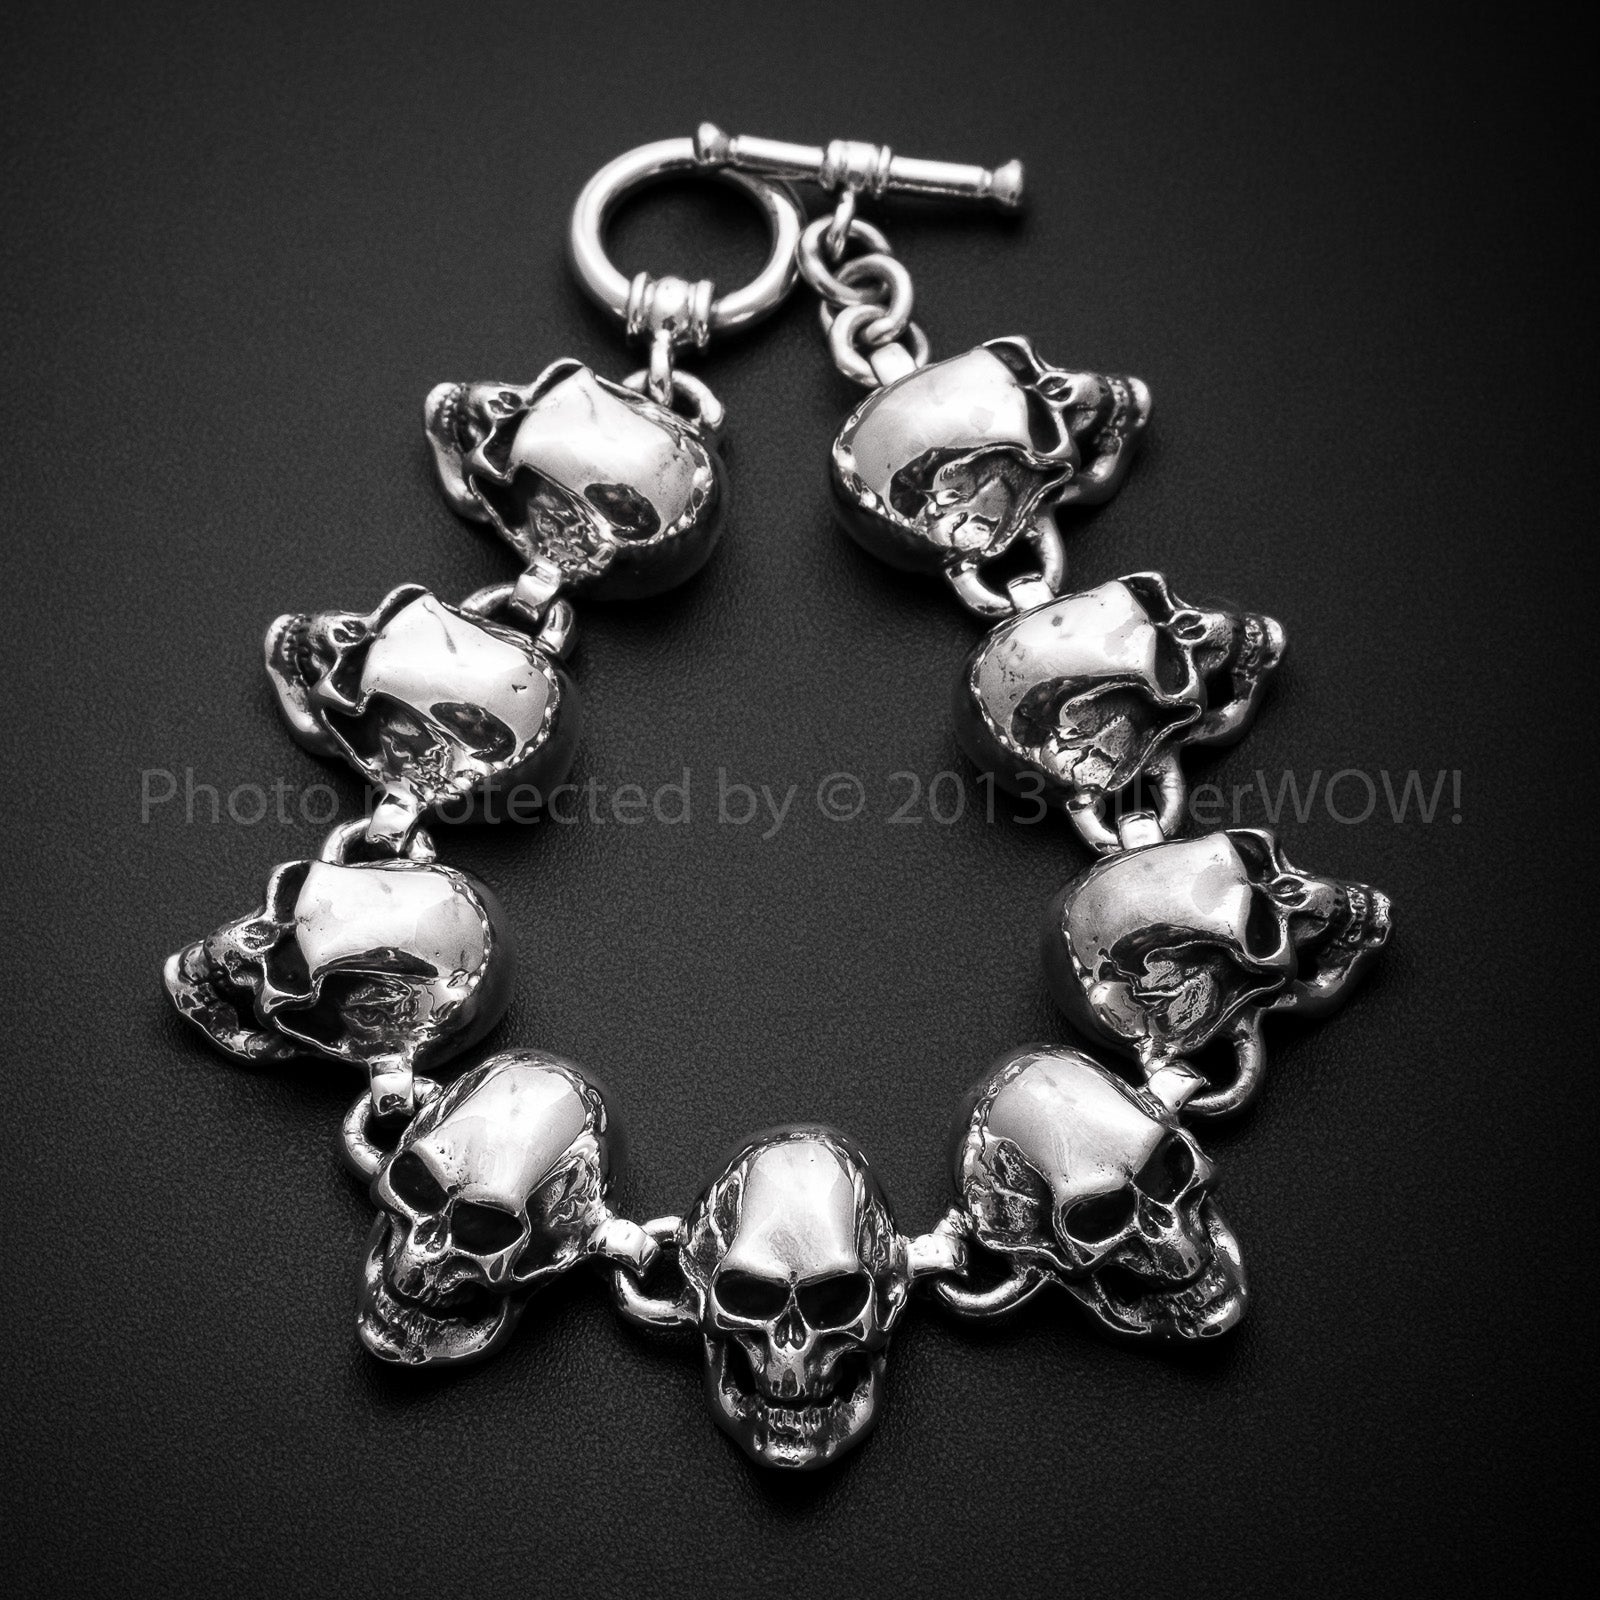 Skulls Silver Bracelet - All Big Skulls